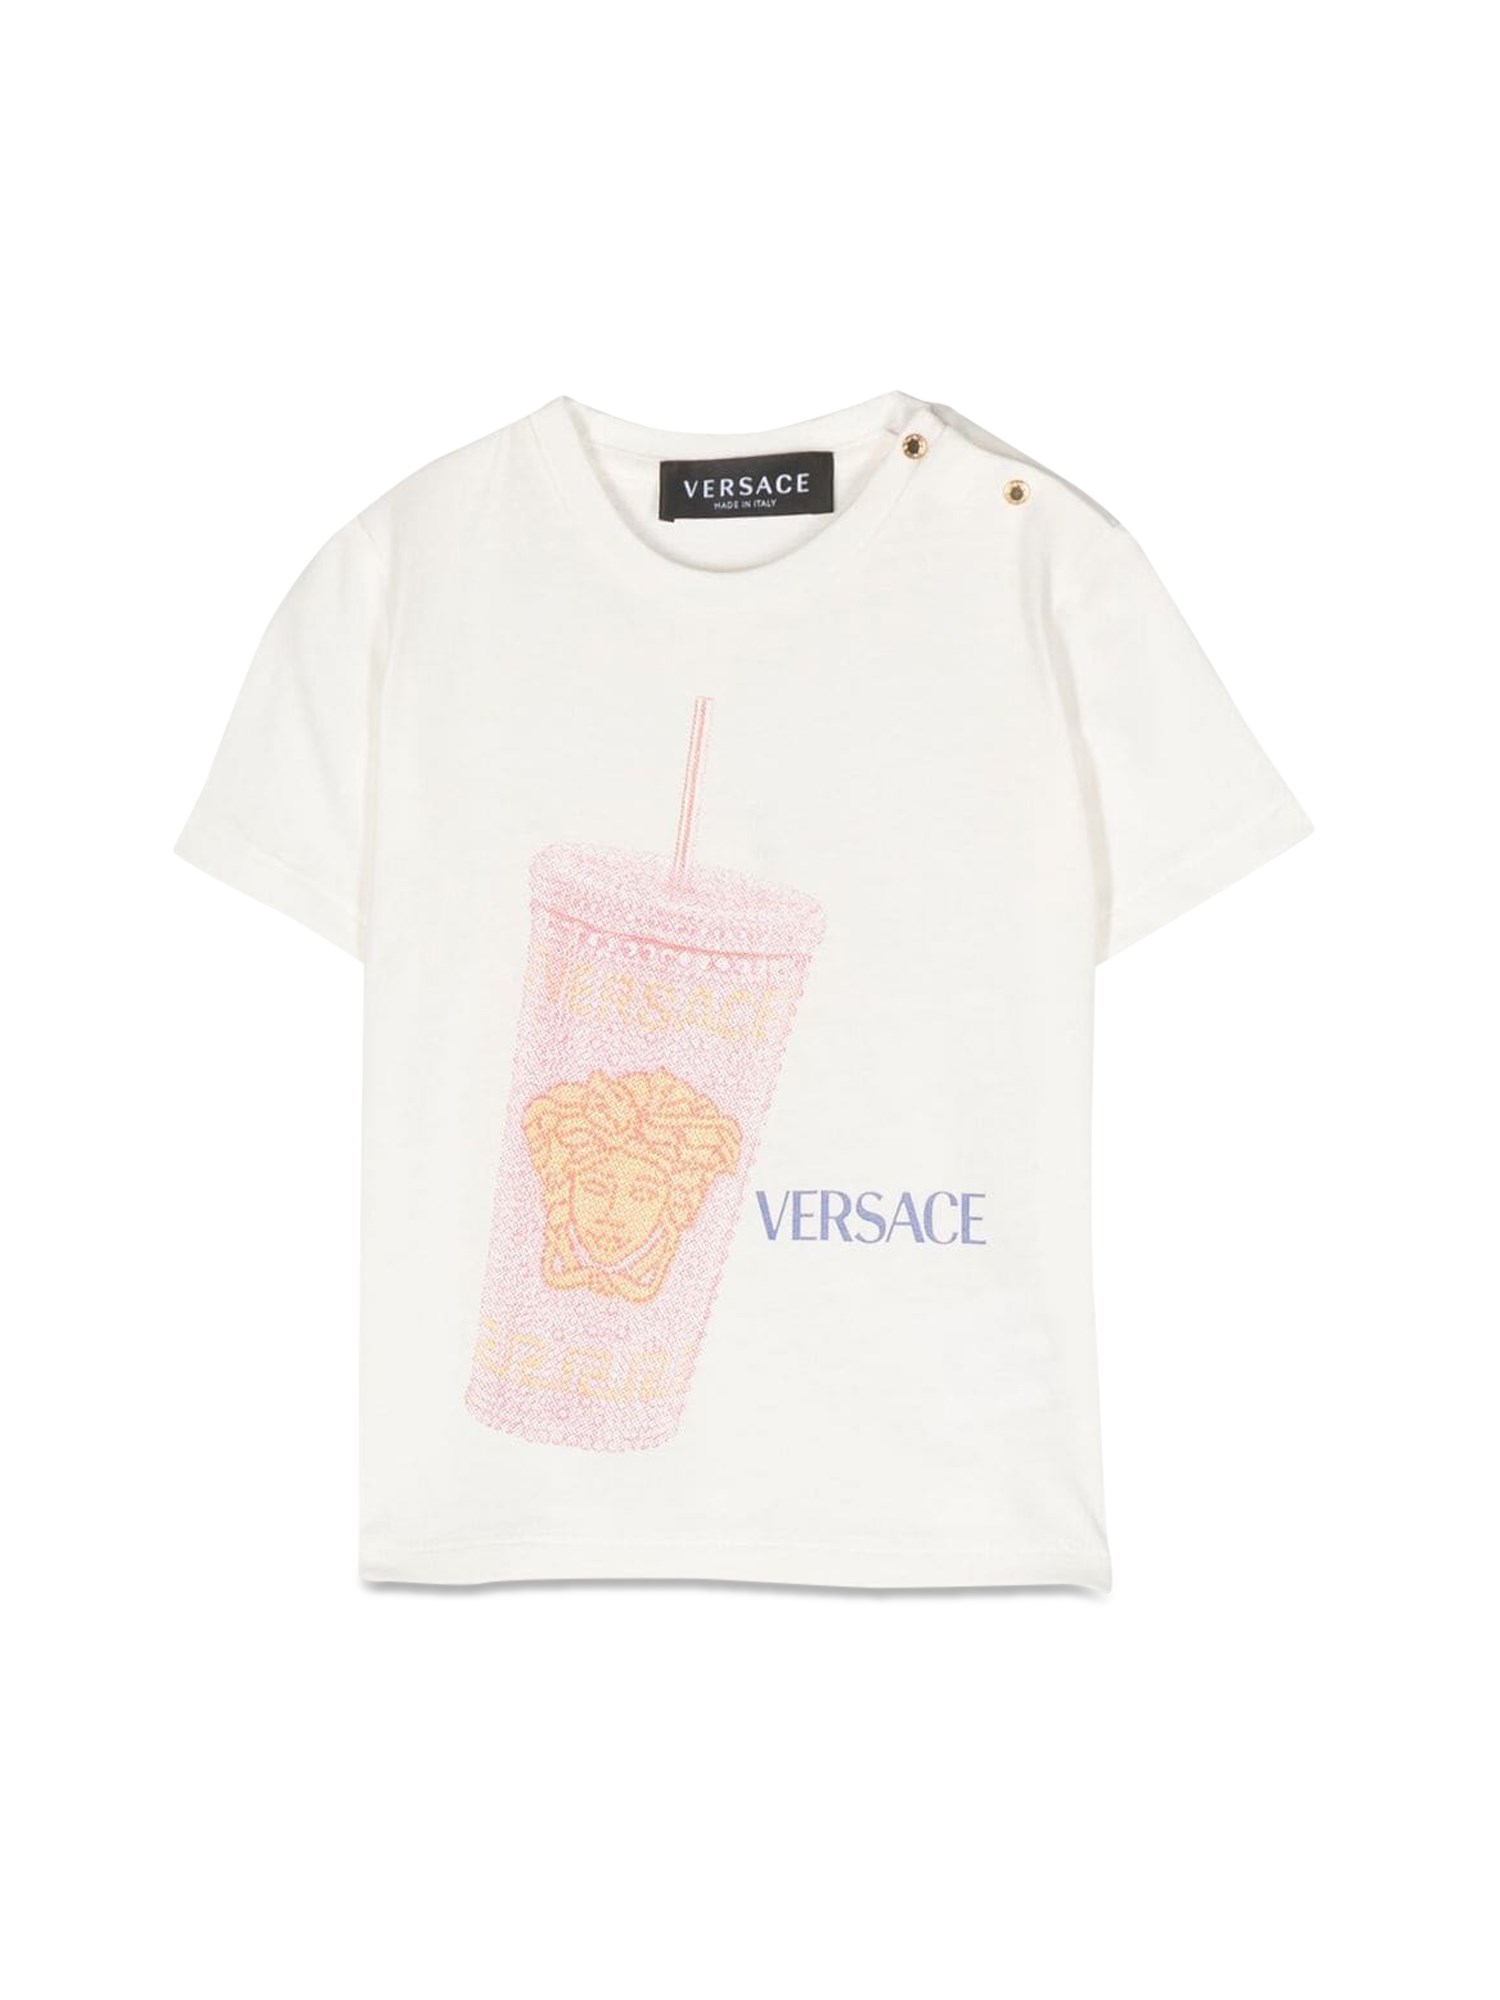 Versace versace mc t-shirt